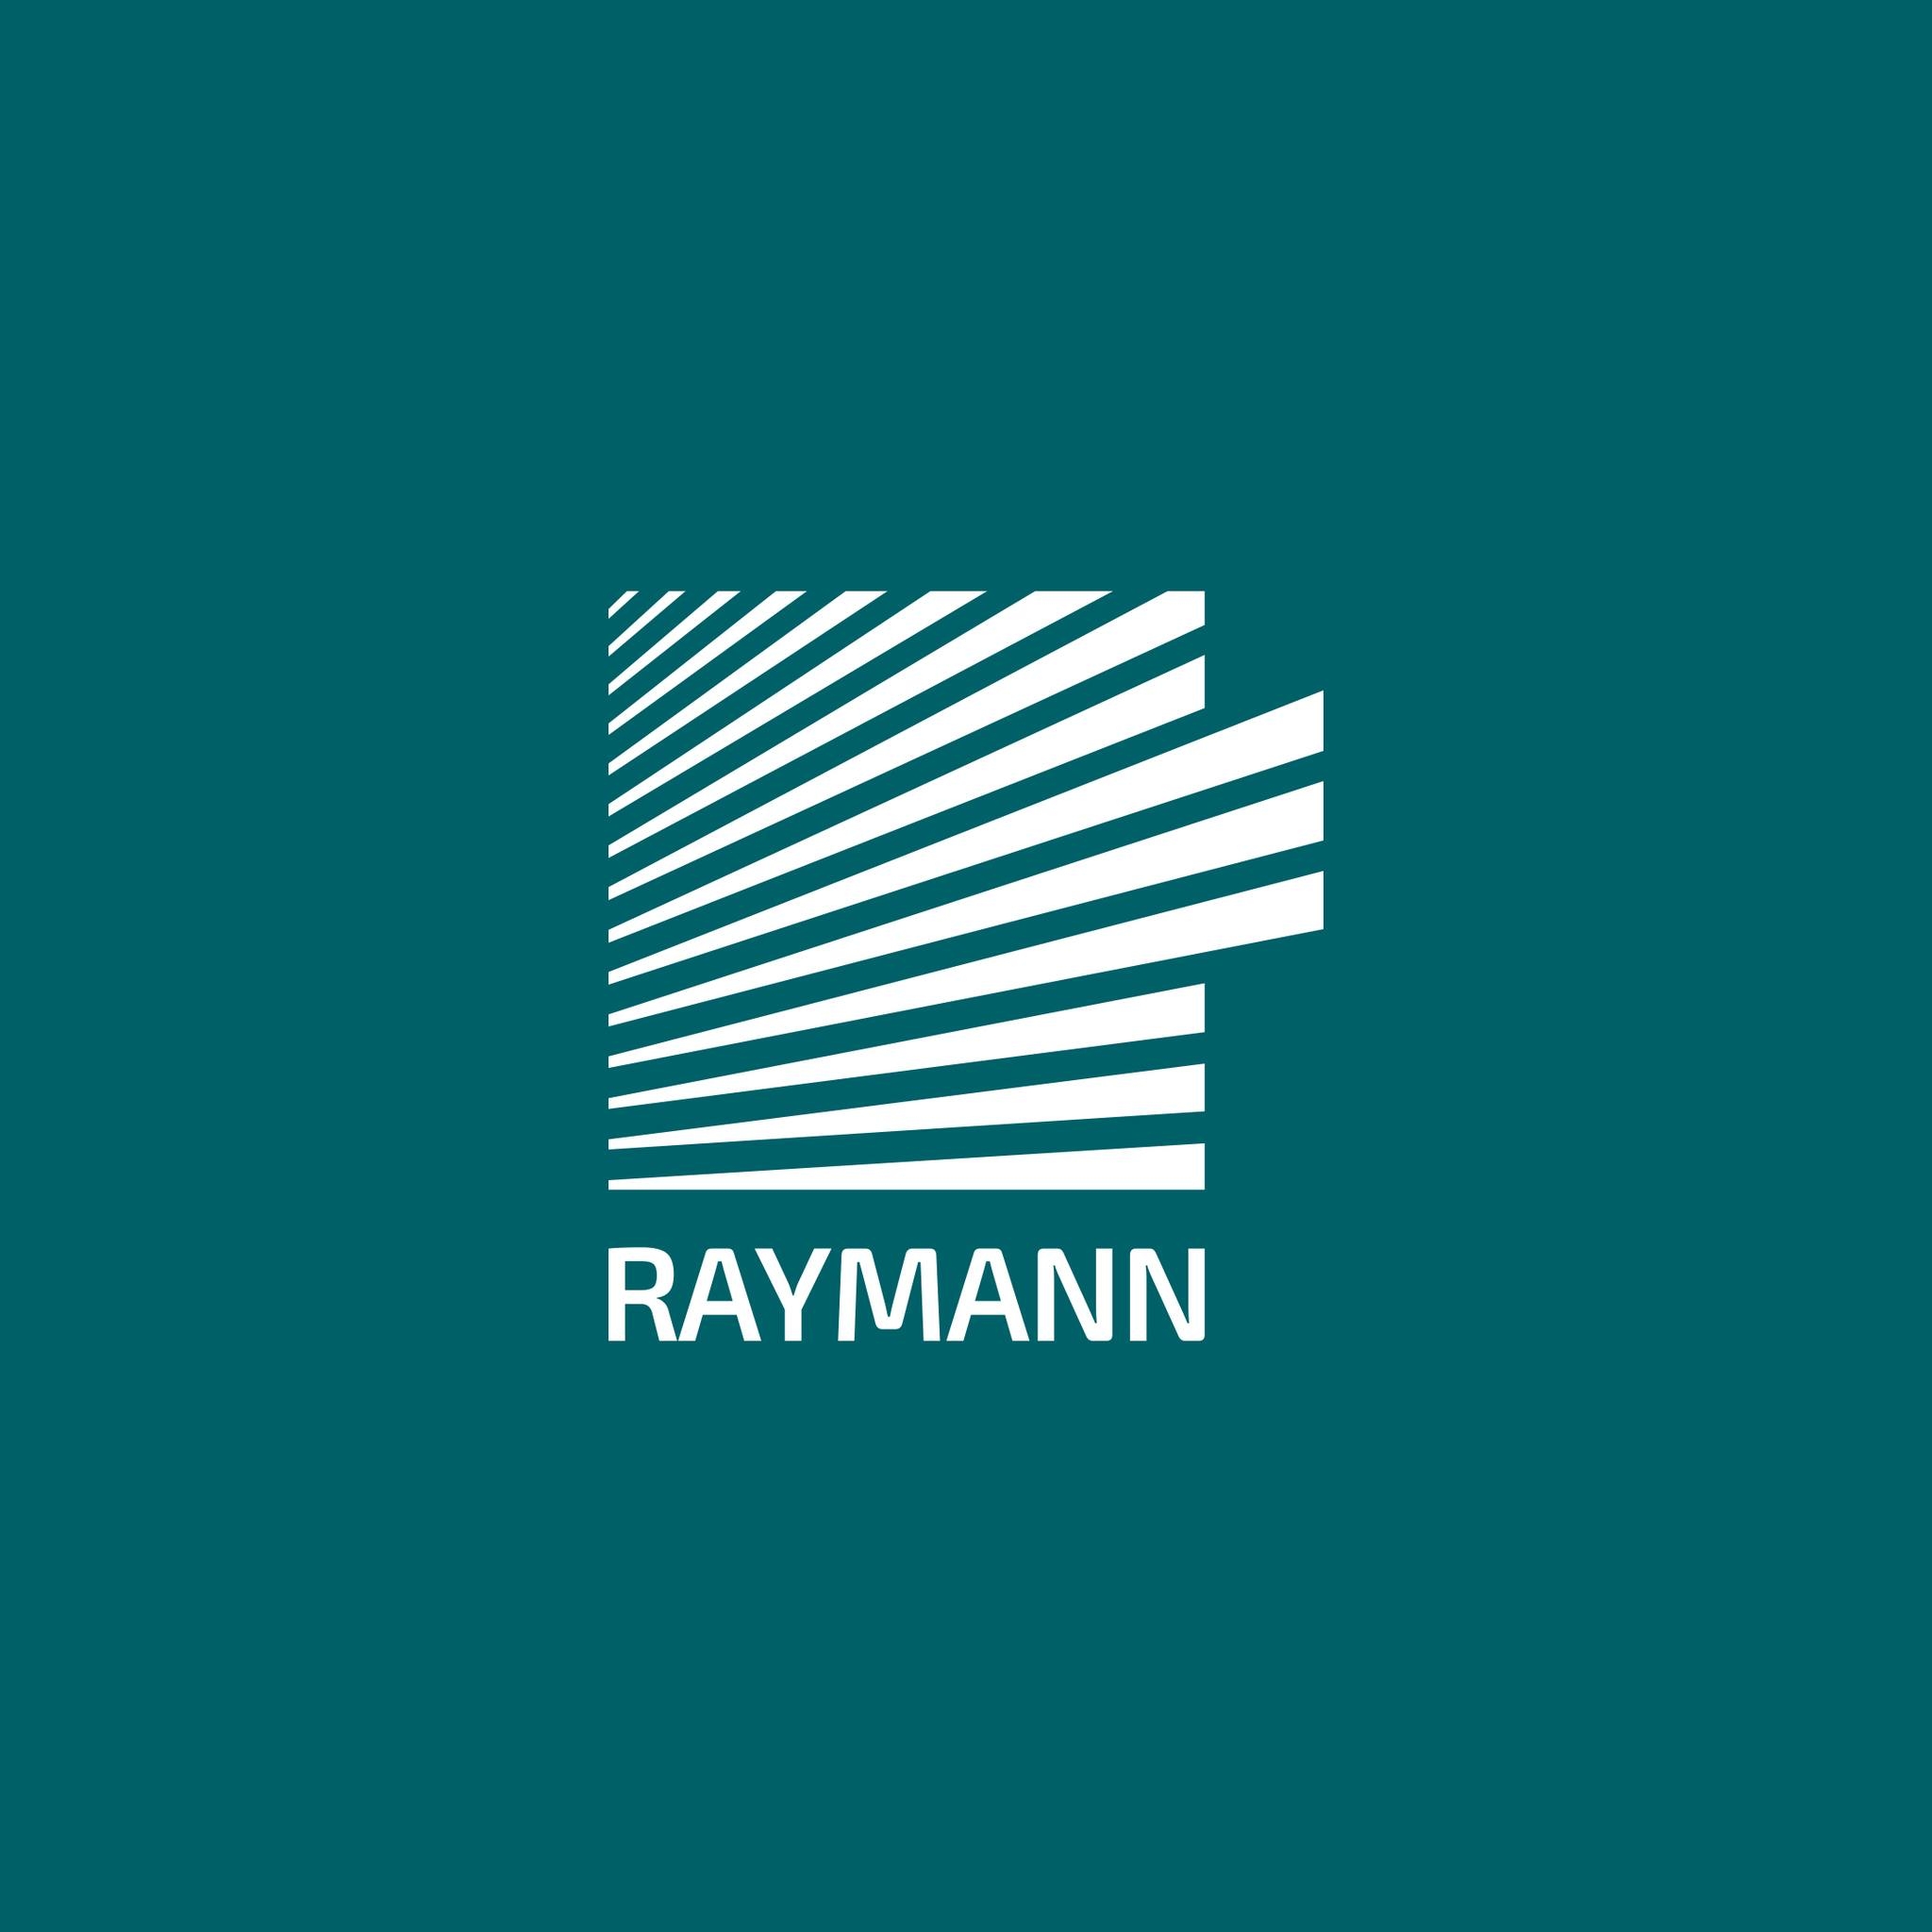 რეიმანი • Raymann